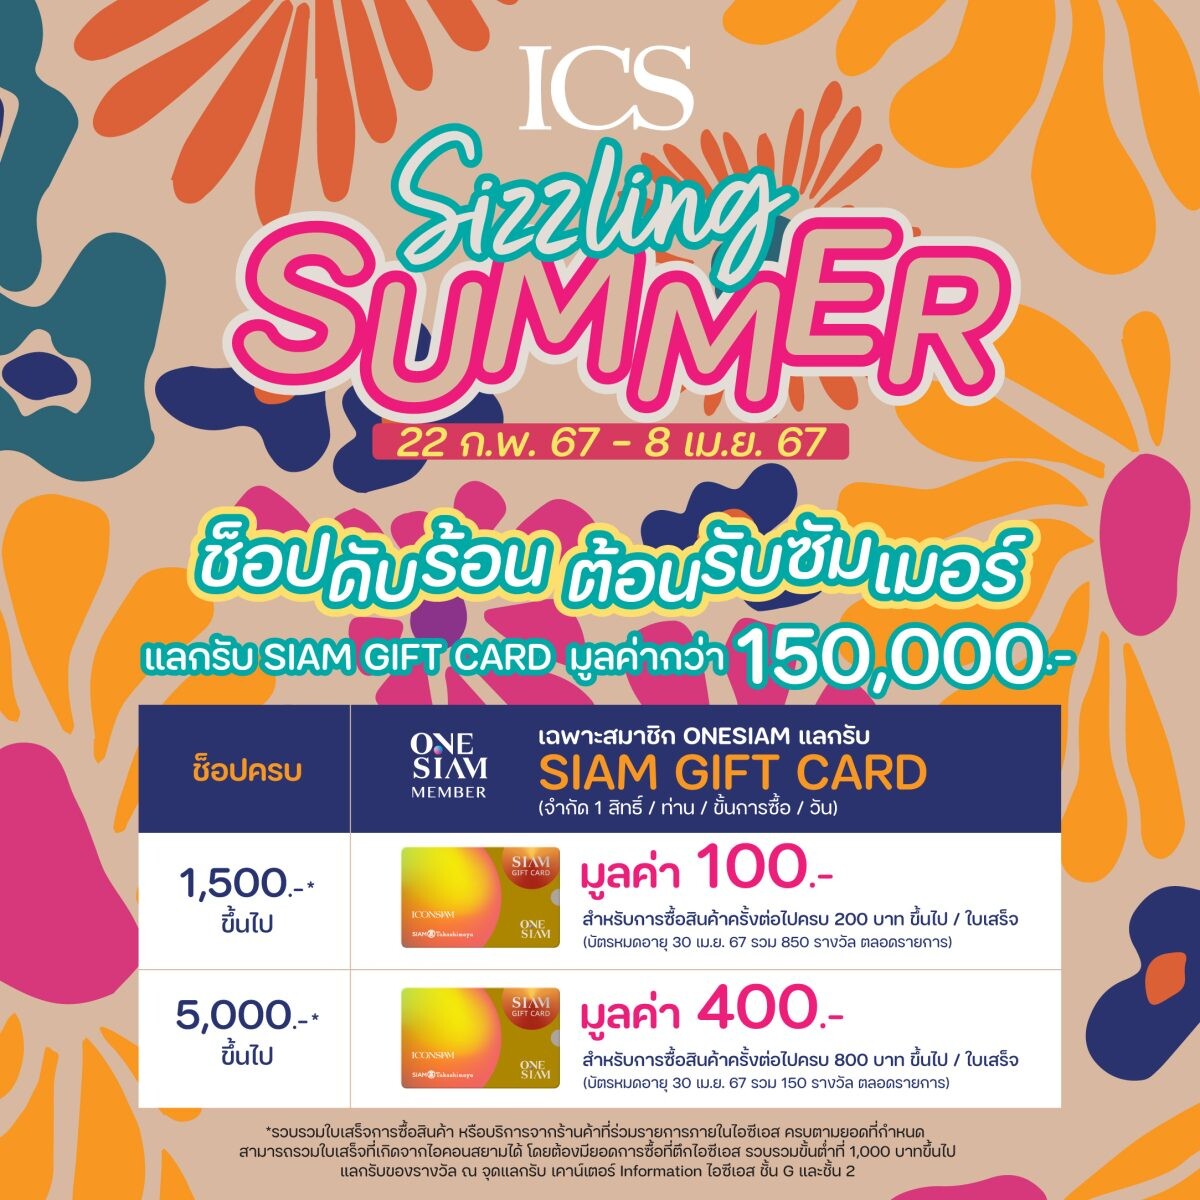 ไอซีเอส จัดแคมเปญ "ICS Sizzling Summer" ช้อปดับร้อน ต้อนรับซัมเมอร์ แลกรับ SIAM GIFT CARD รวมมูลค่า 1.5 แสนบาท ตั้งแต่วันนี้ - 8 เมษายน 2567